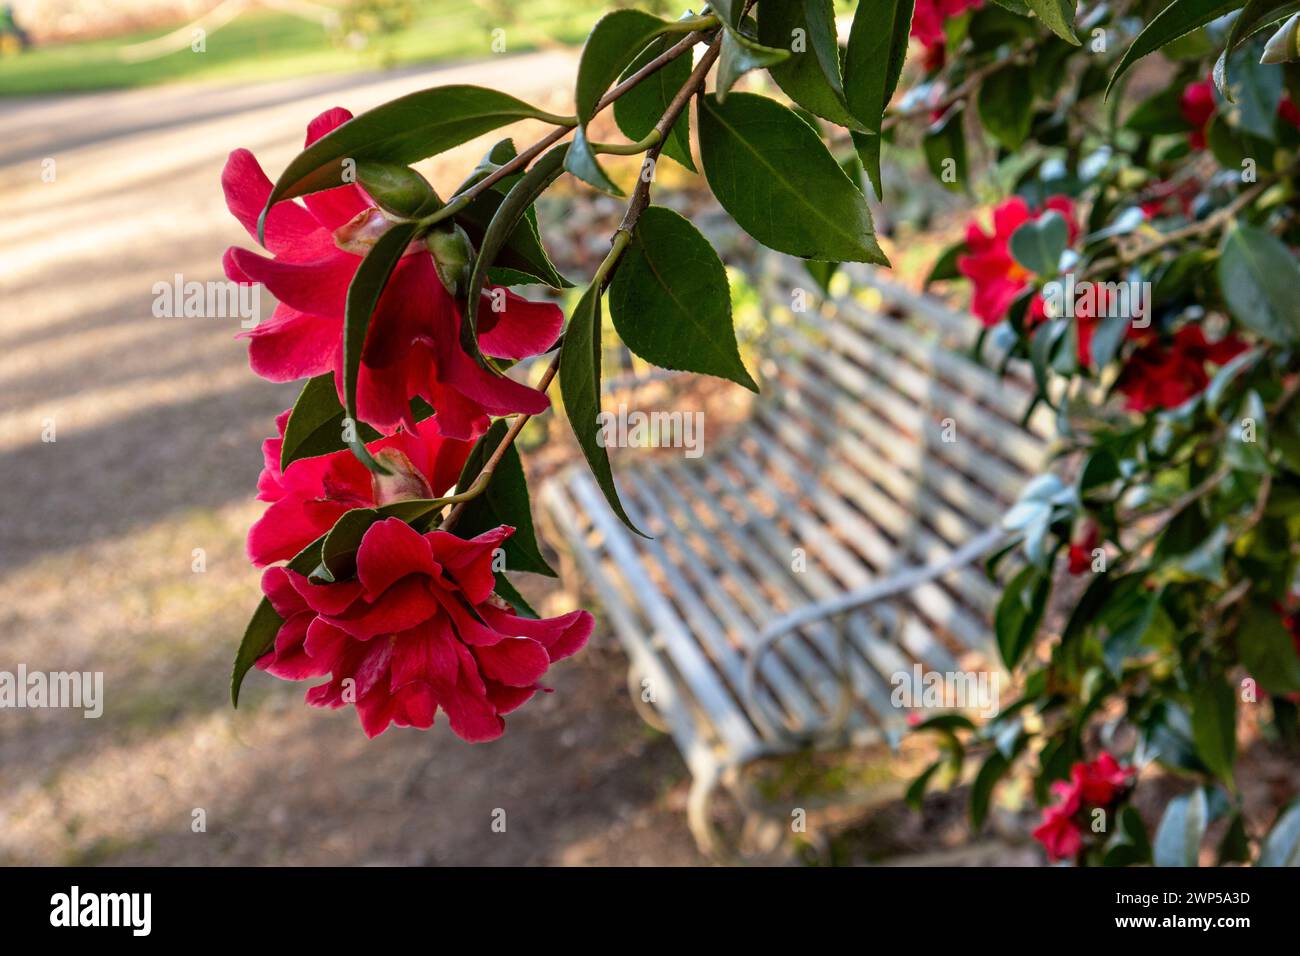 Camellia Japonica Rouge dans la lumière basse de l'après-midi d'hiver avec banc de jardin en métal blanc traditionnel derrière. Calme lieu réfléchissant de contemplation. Camellia Japonica famille rouge Theaceae floraison entre janvier et mars camélia commun ou camélia japonais Banque D'Images